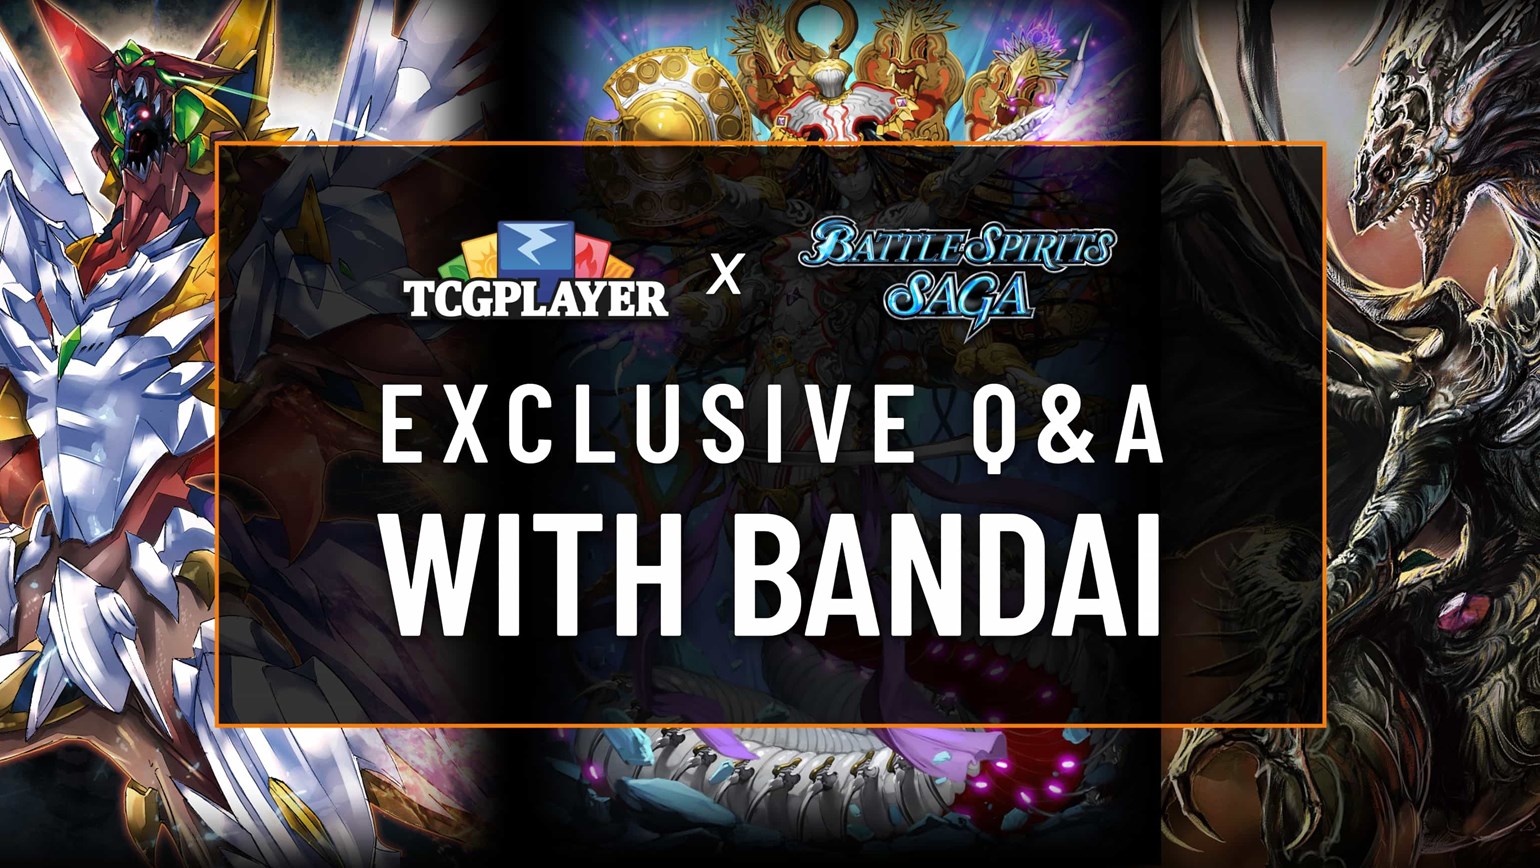 Q&A with Bandai on Battle Spirits Saga